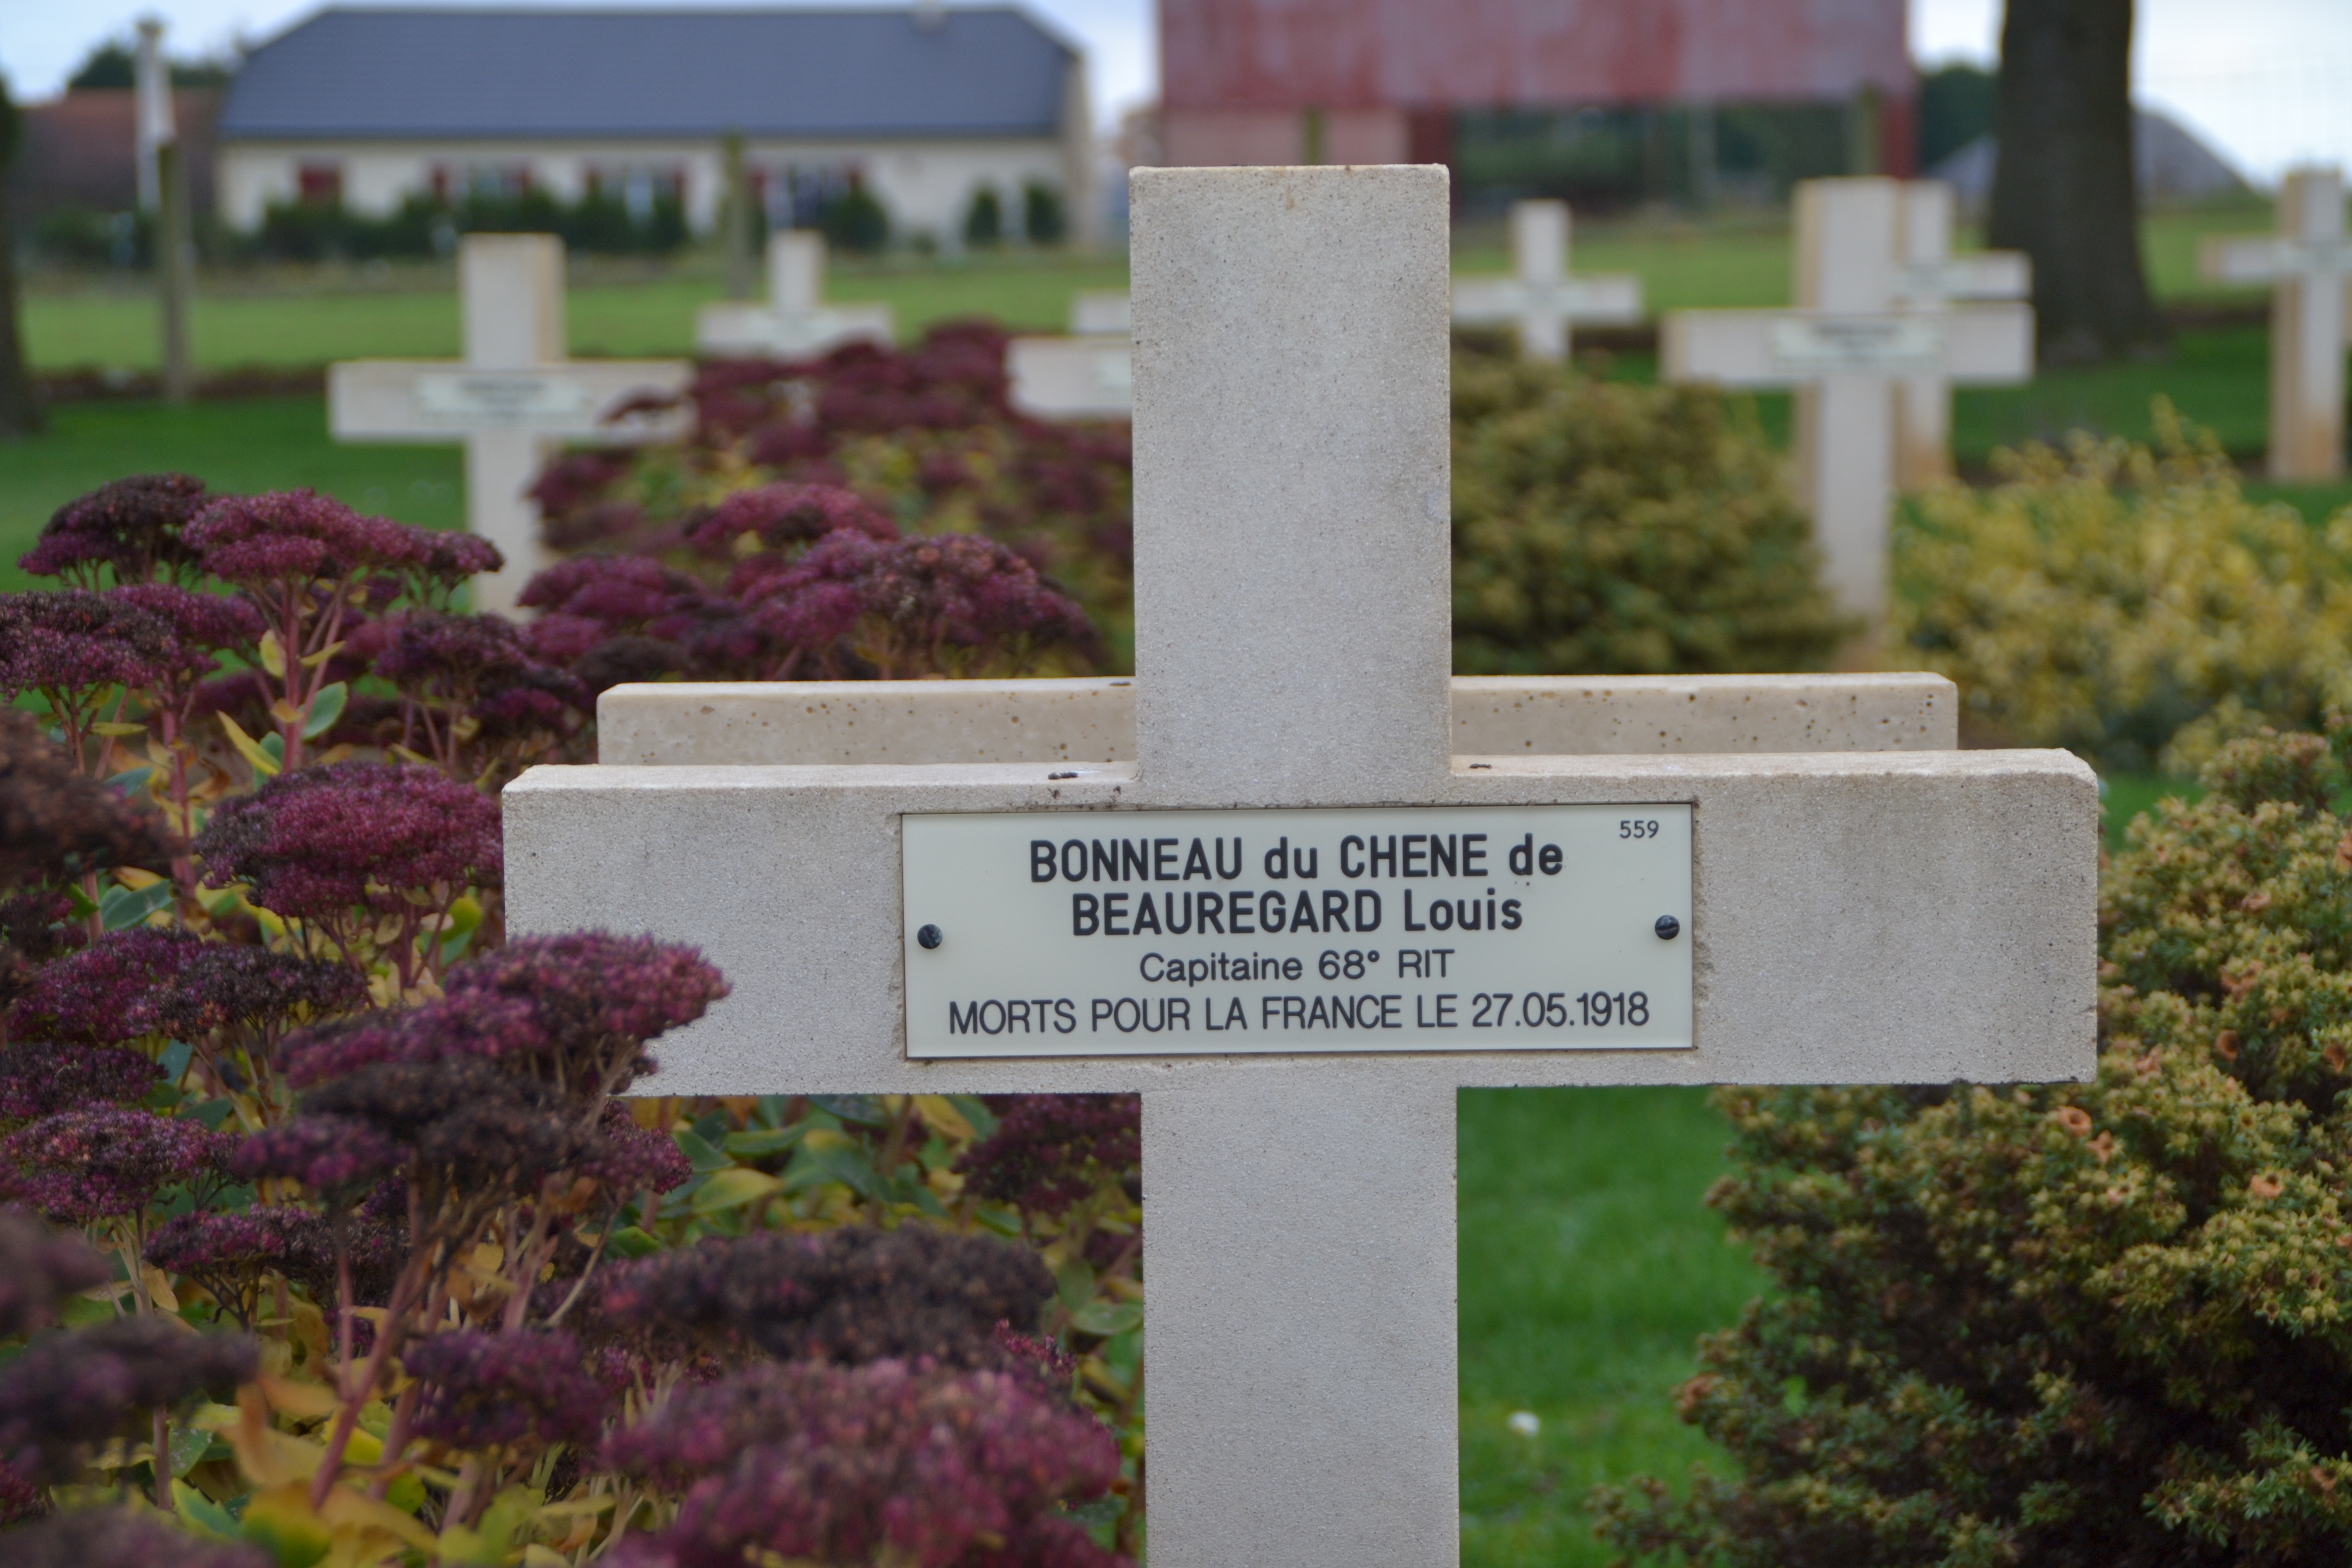 Bonneau du Chesne de Beauregard Louis sépulture à Cerny en Laonnois